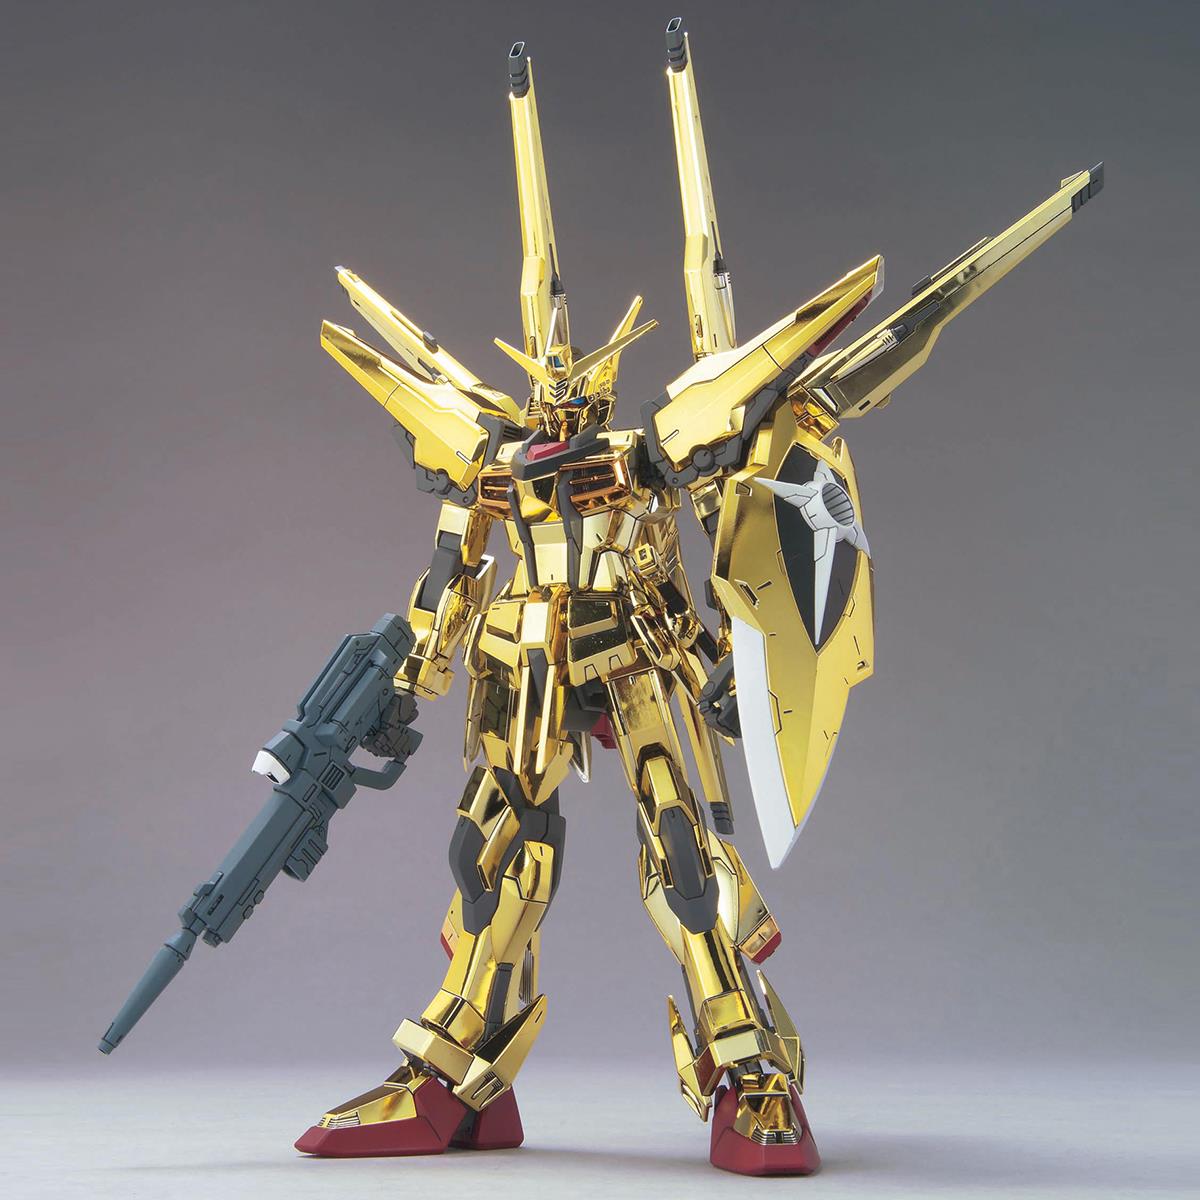 Gundam: Akatsuki Gundam Oowashi/Shiranui Pack Full Set 1/100 Model